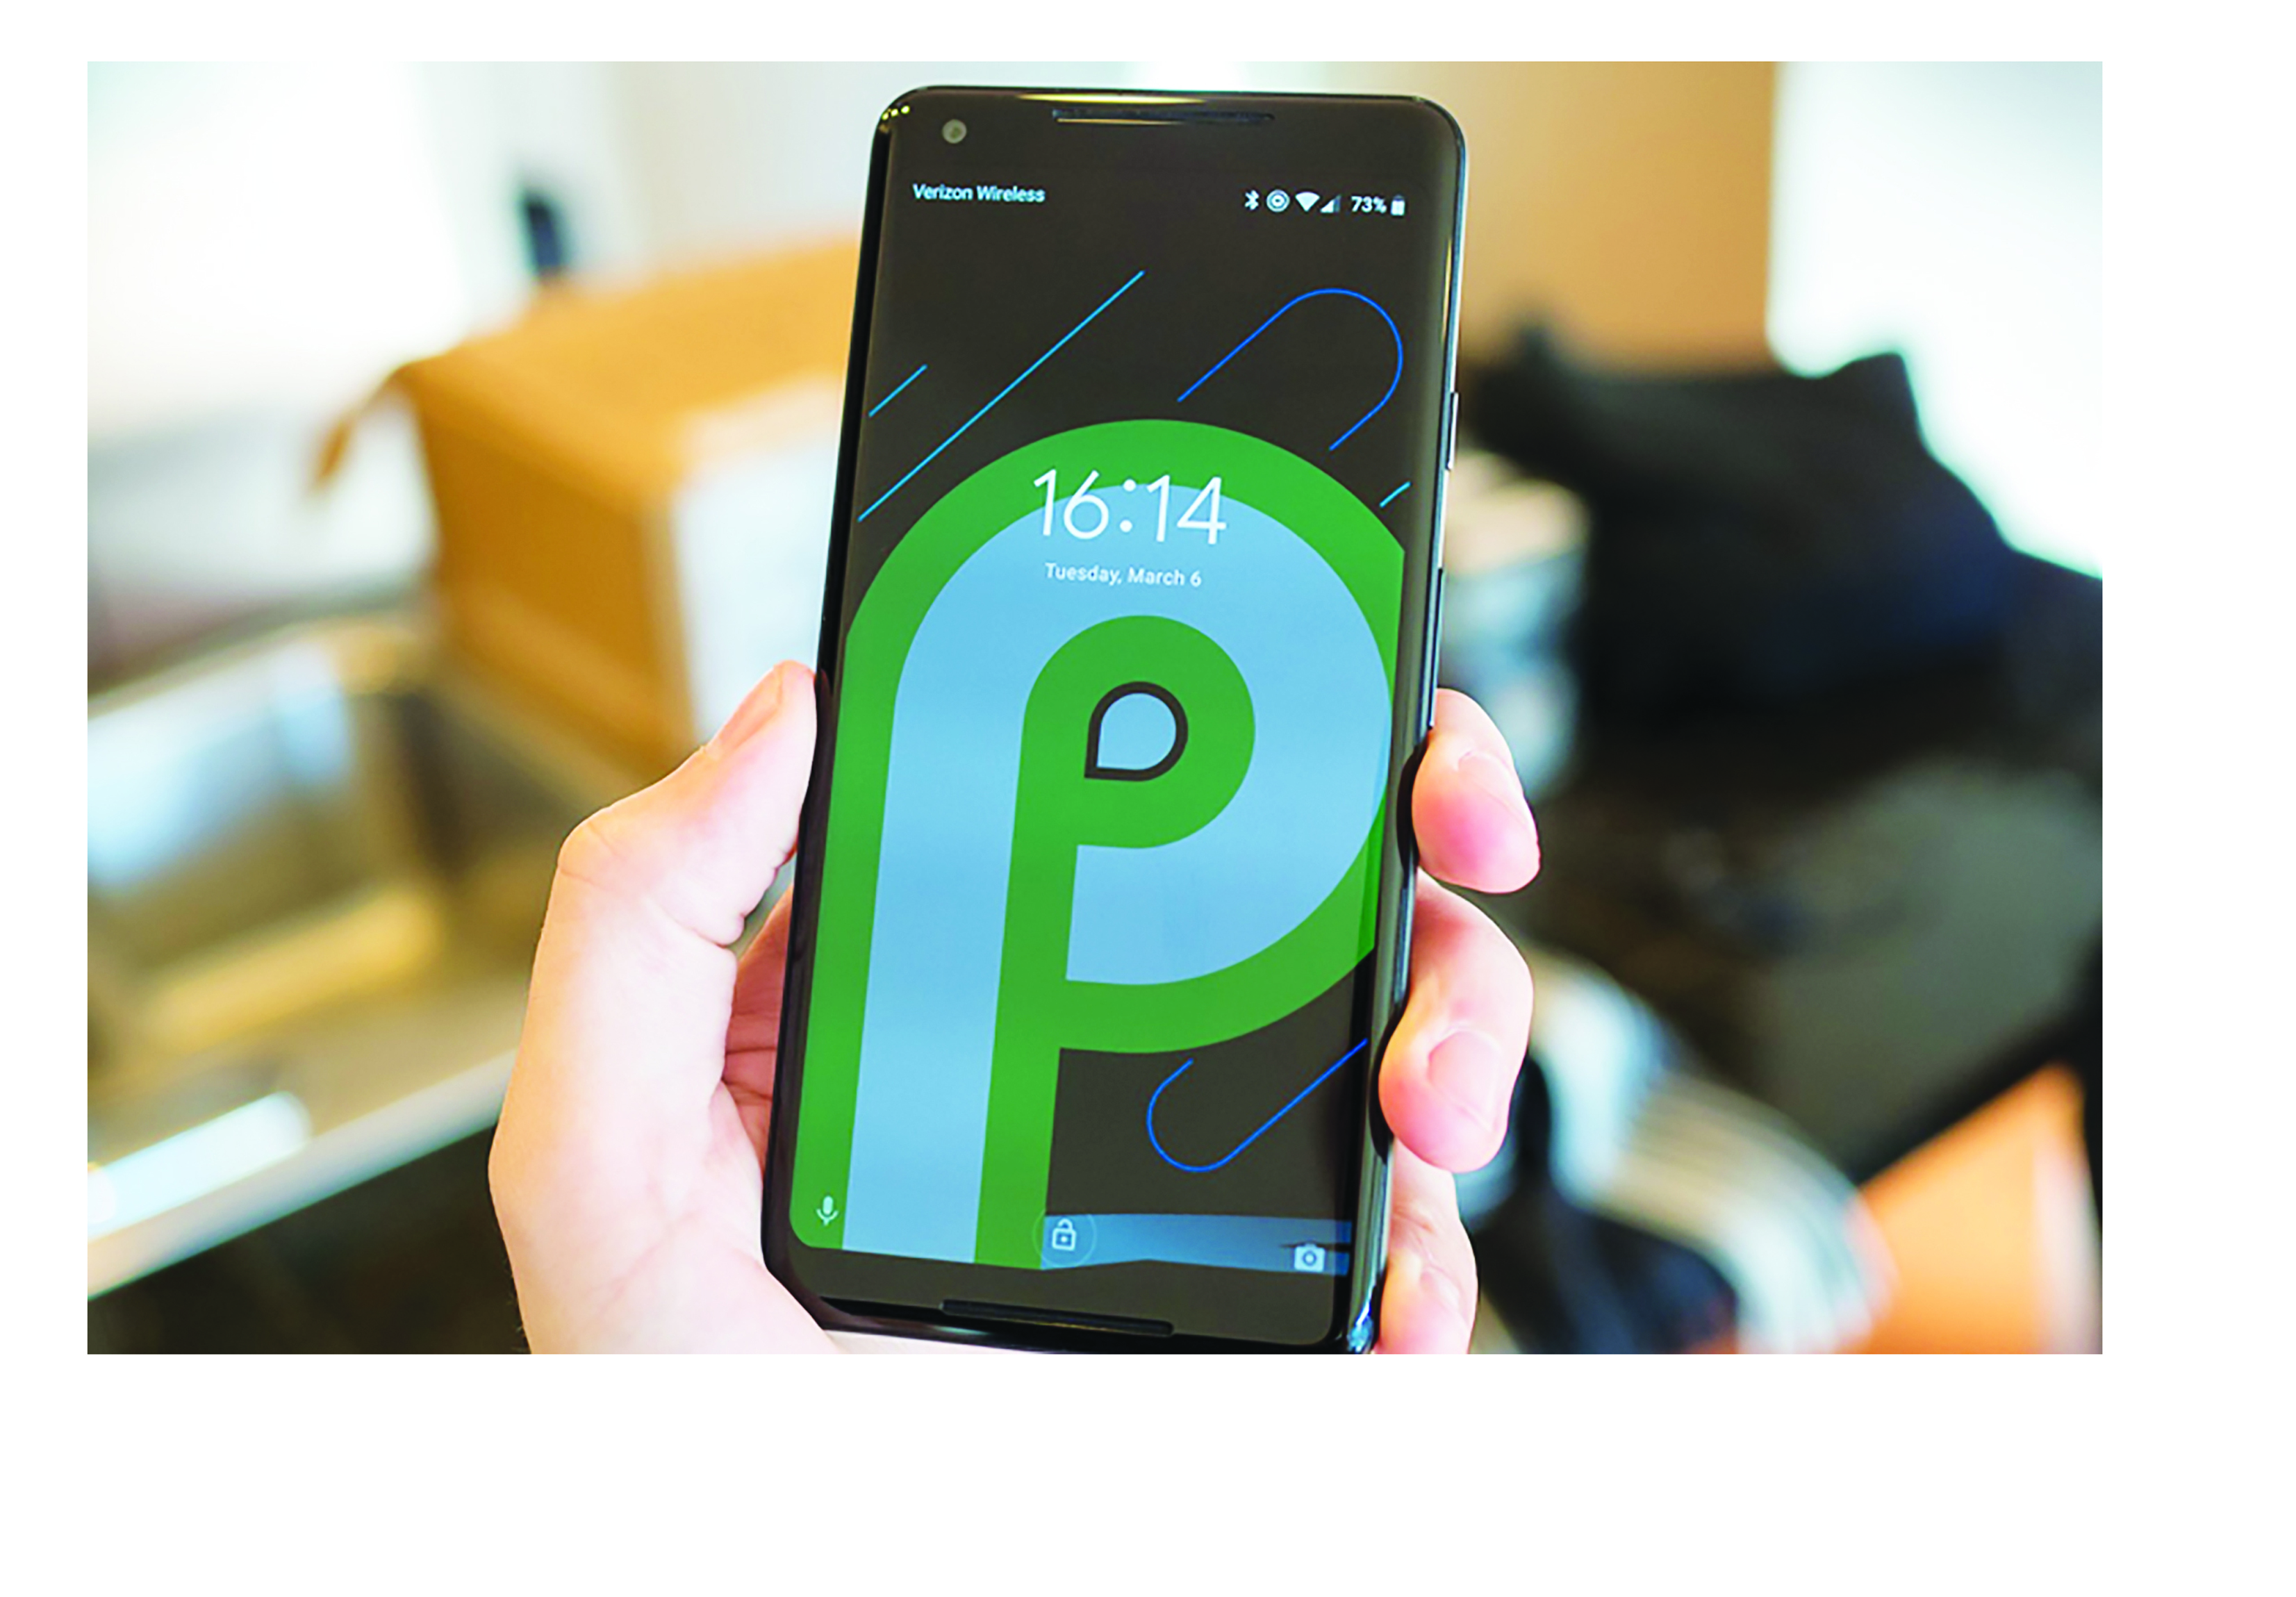 Googleвыпустила новый Android 9 Pie для смартфонов